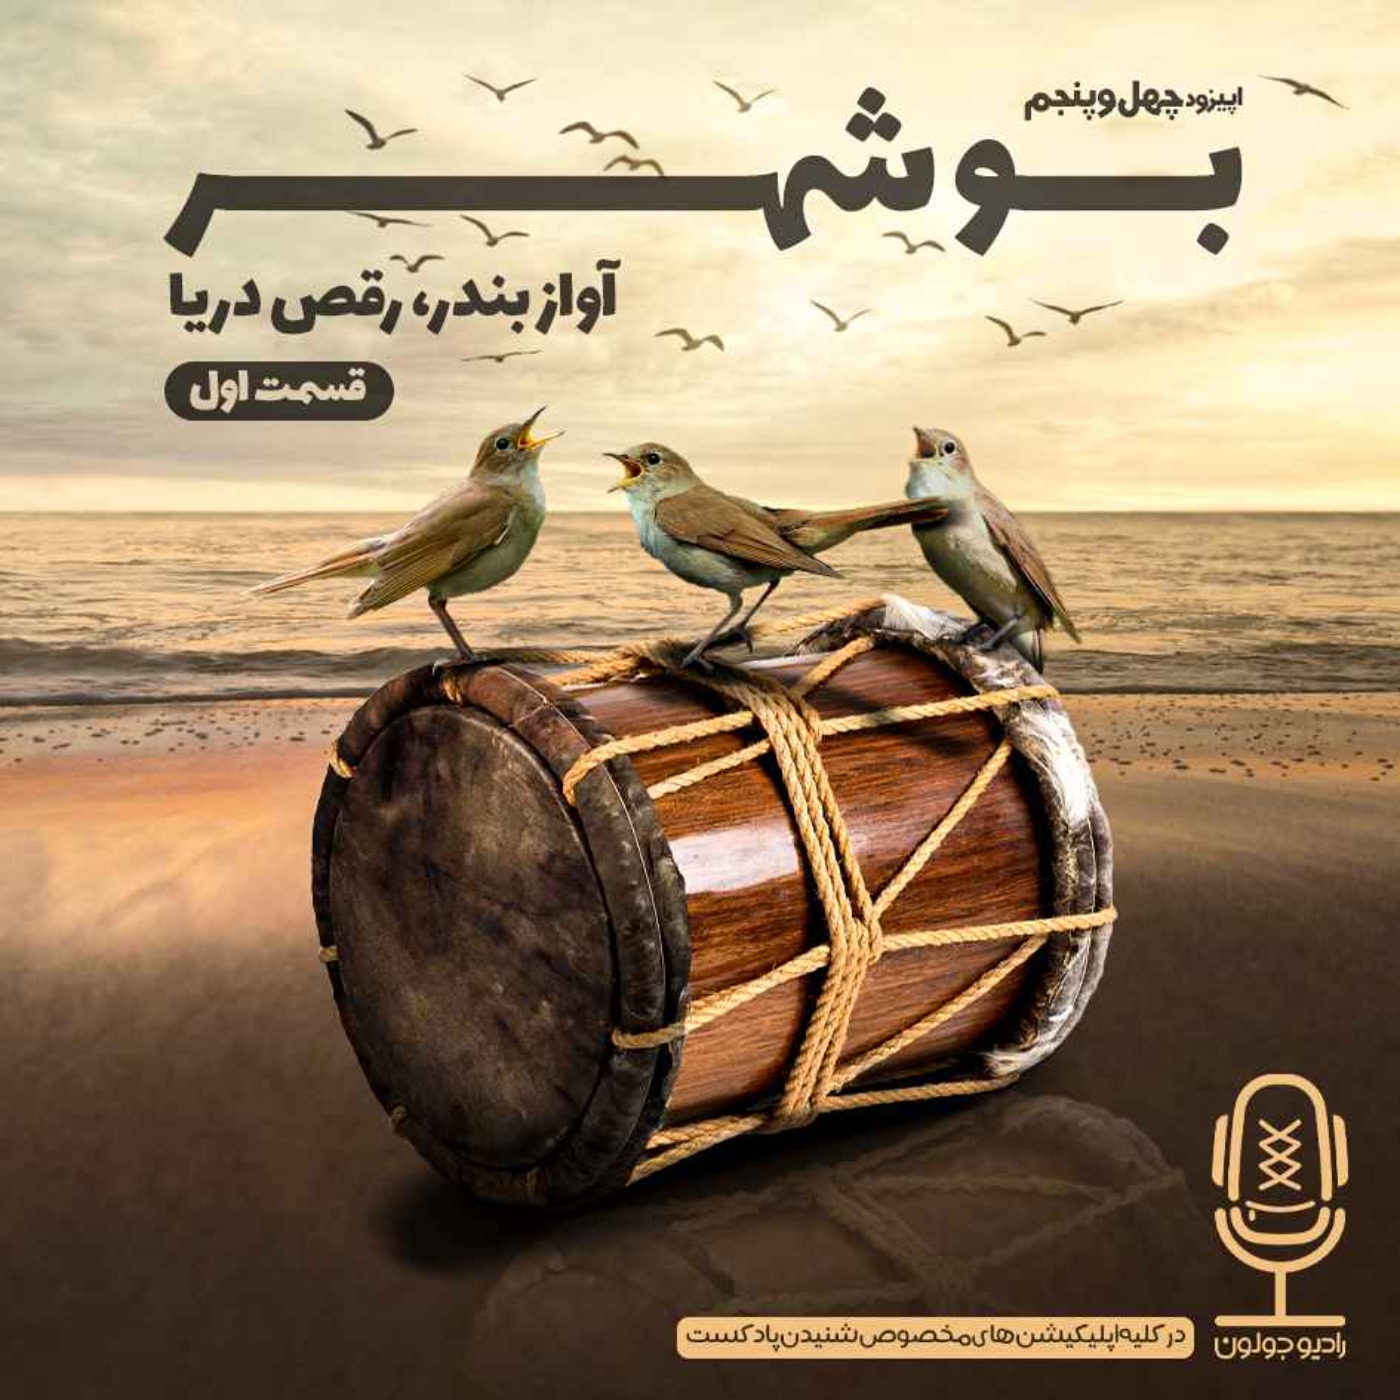 E45 - بوشهر - آواز بندر، رقص دریا قسمت اول